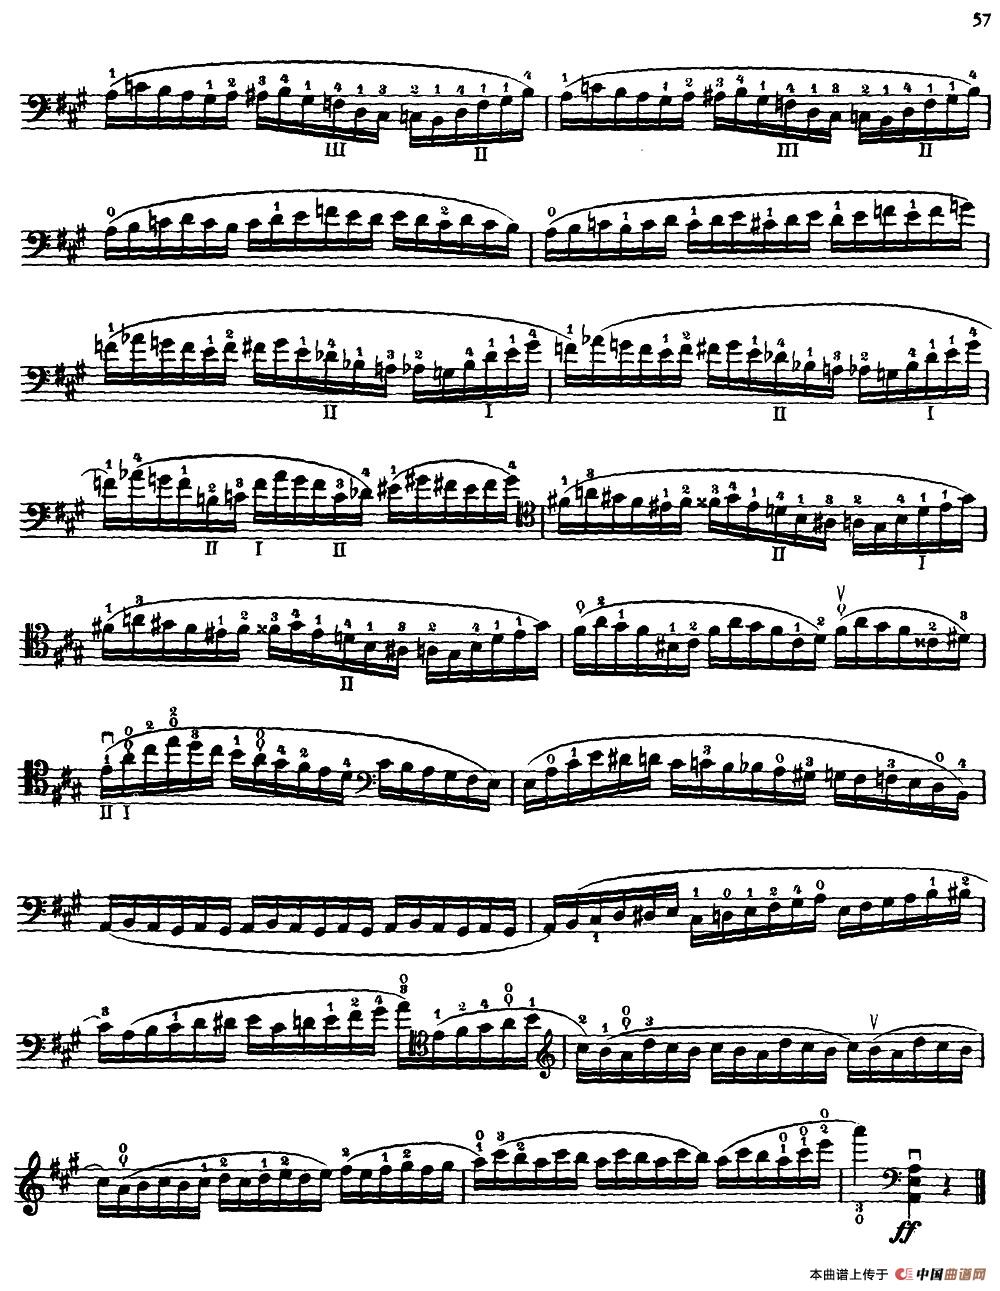 大提琴高级练习曲40首 No.26